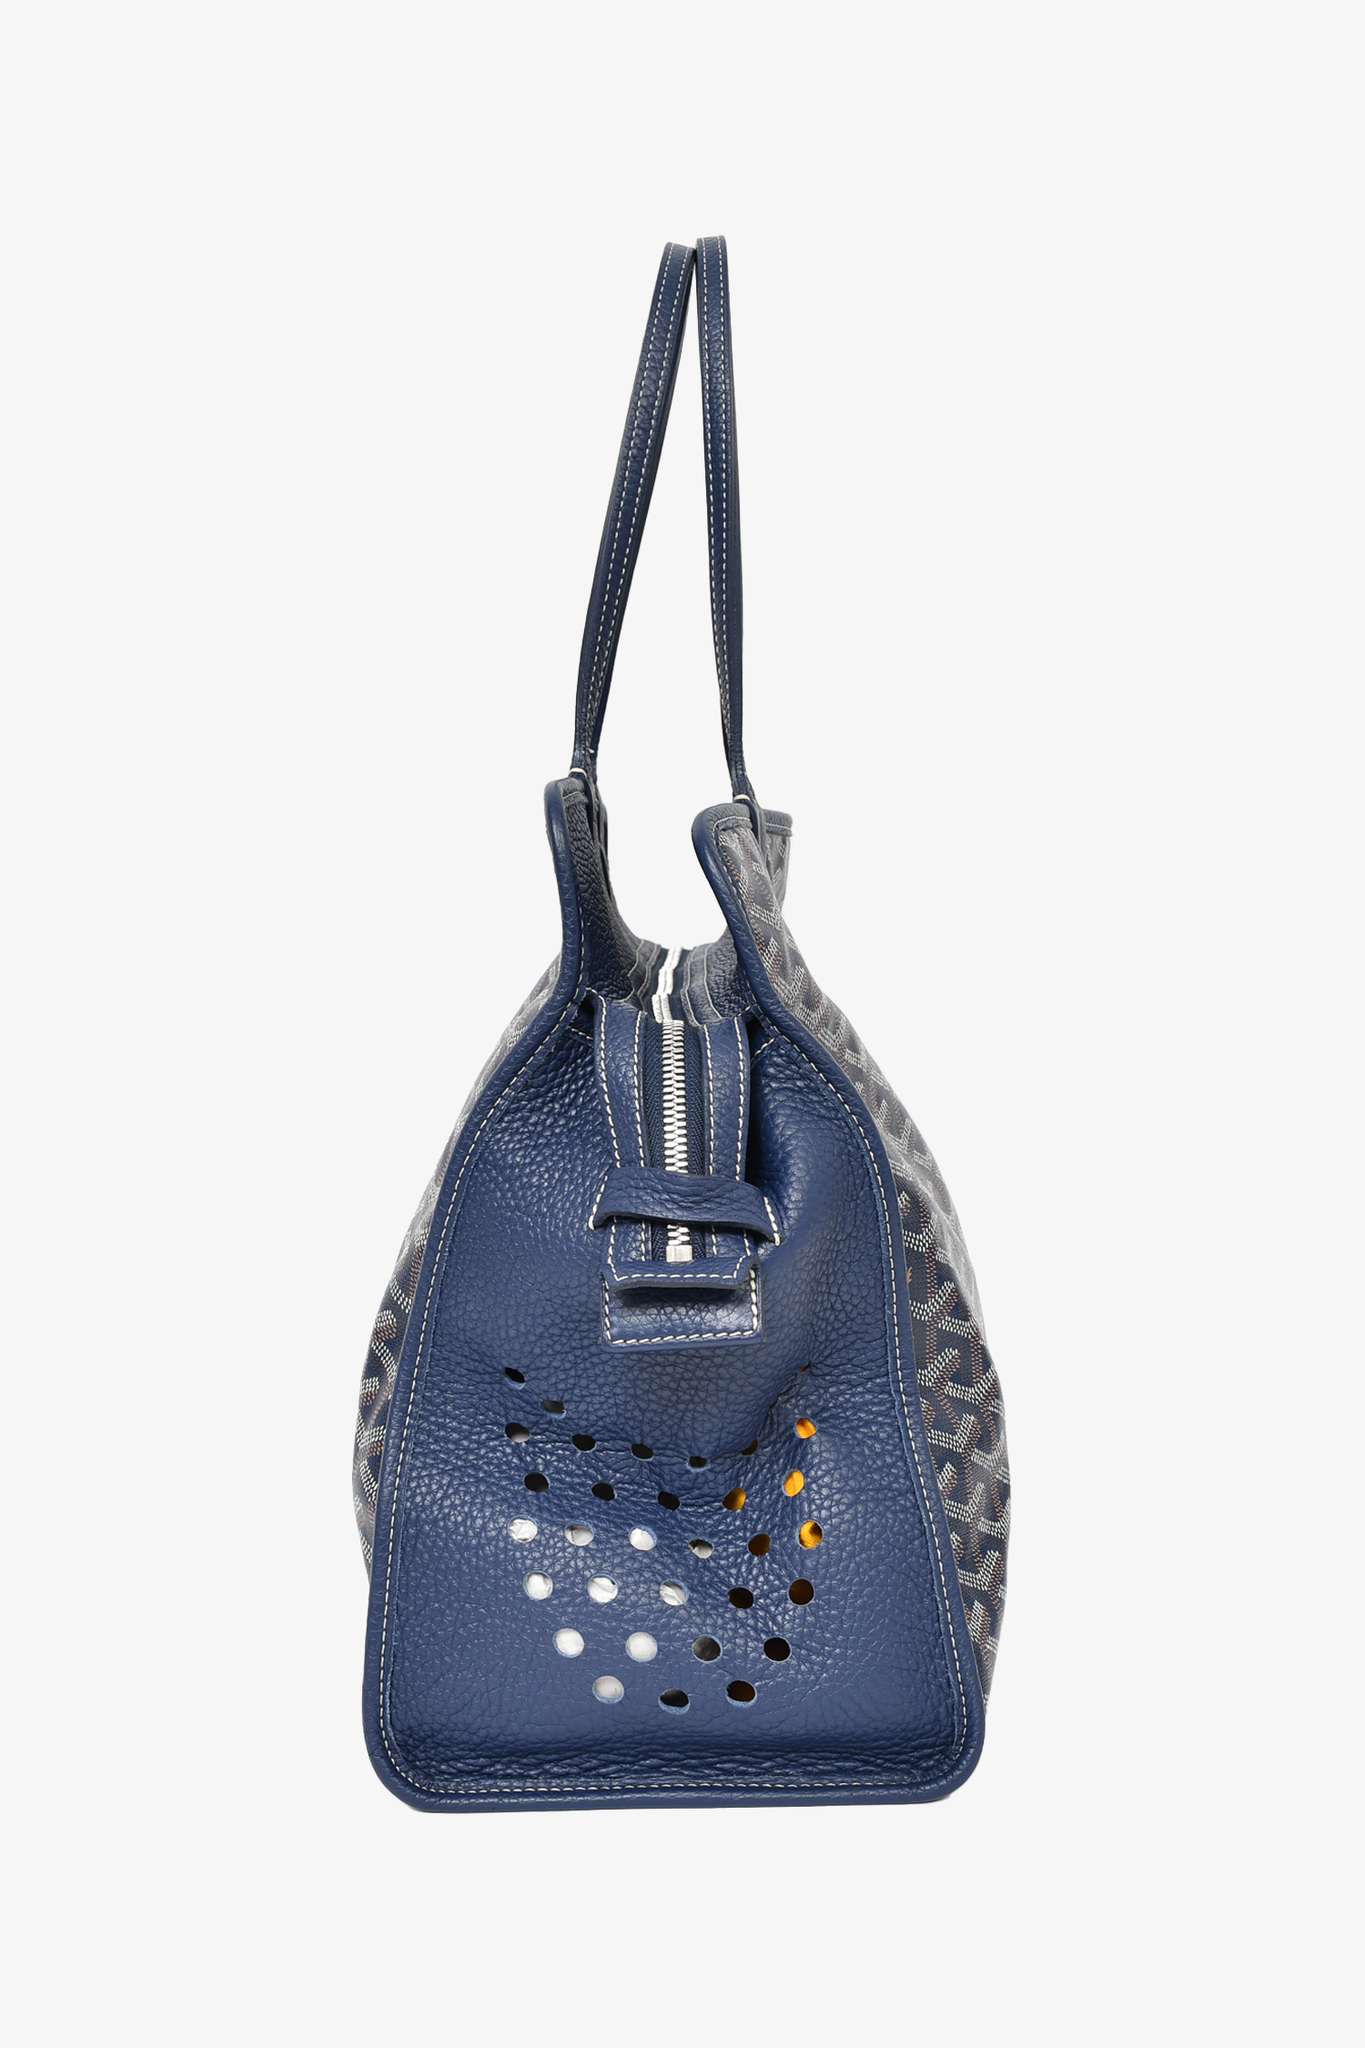 Goyard Goyardine Sac Hardy - Blue Totes, Handbags - GOY37936